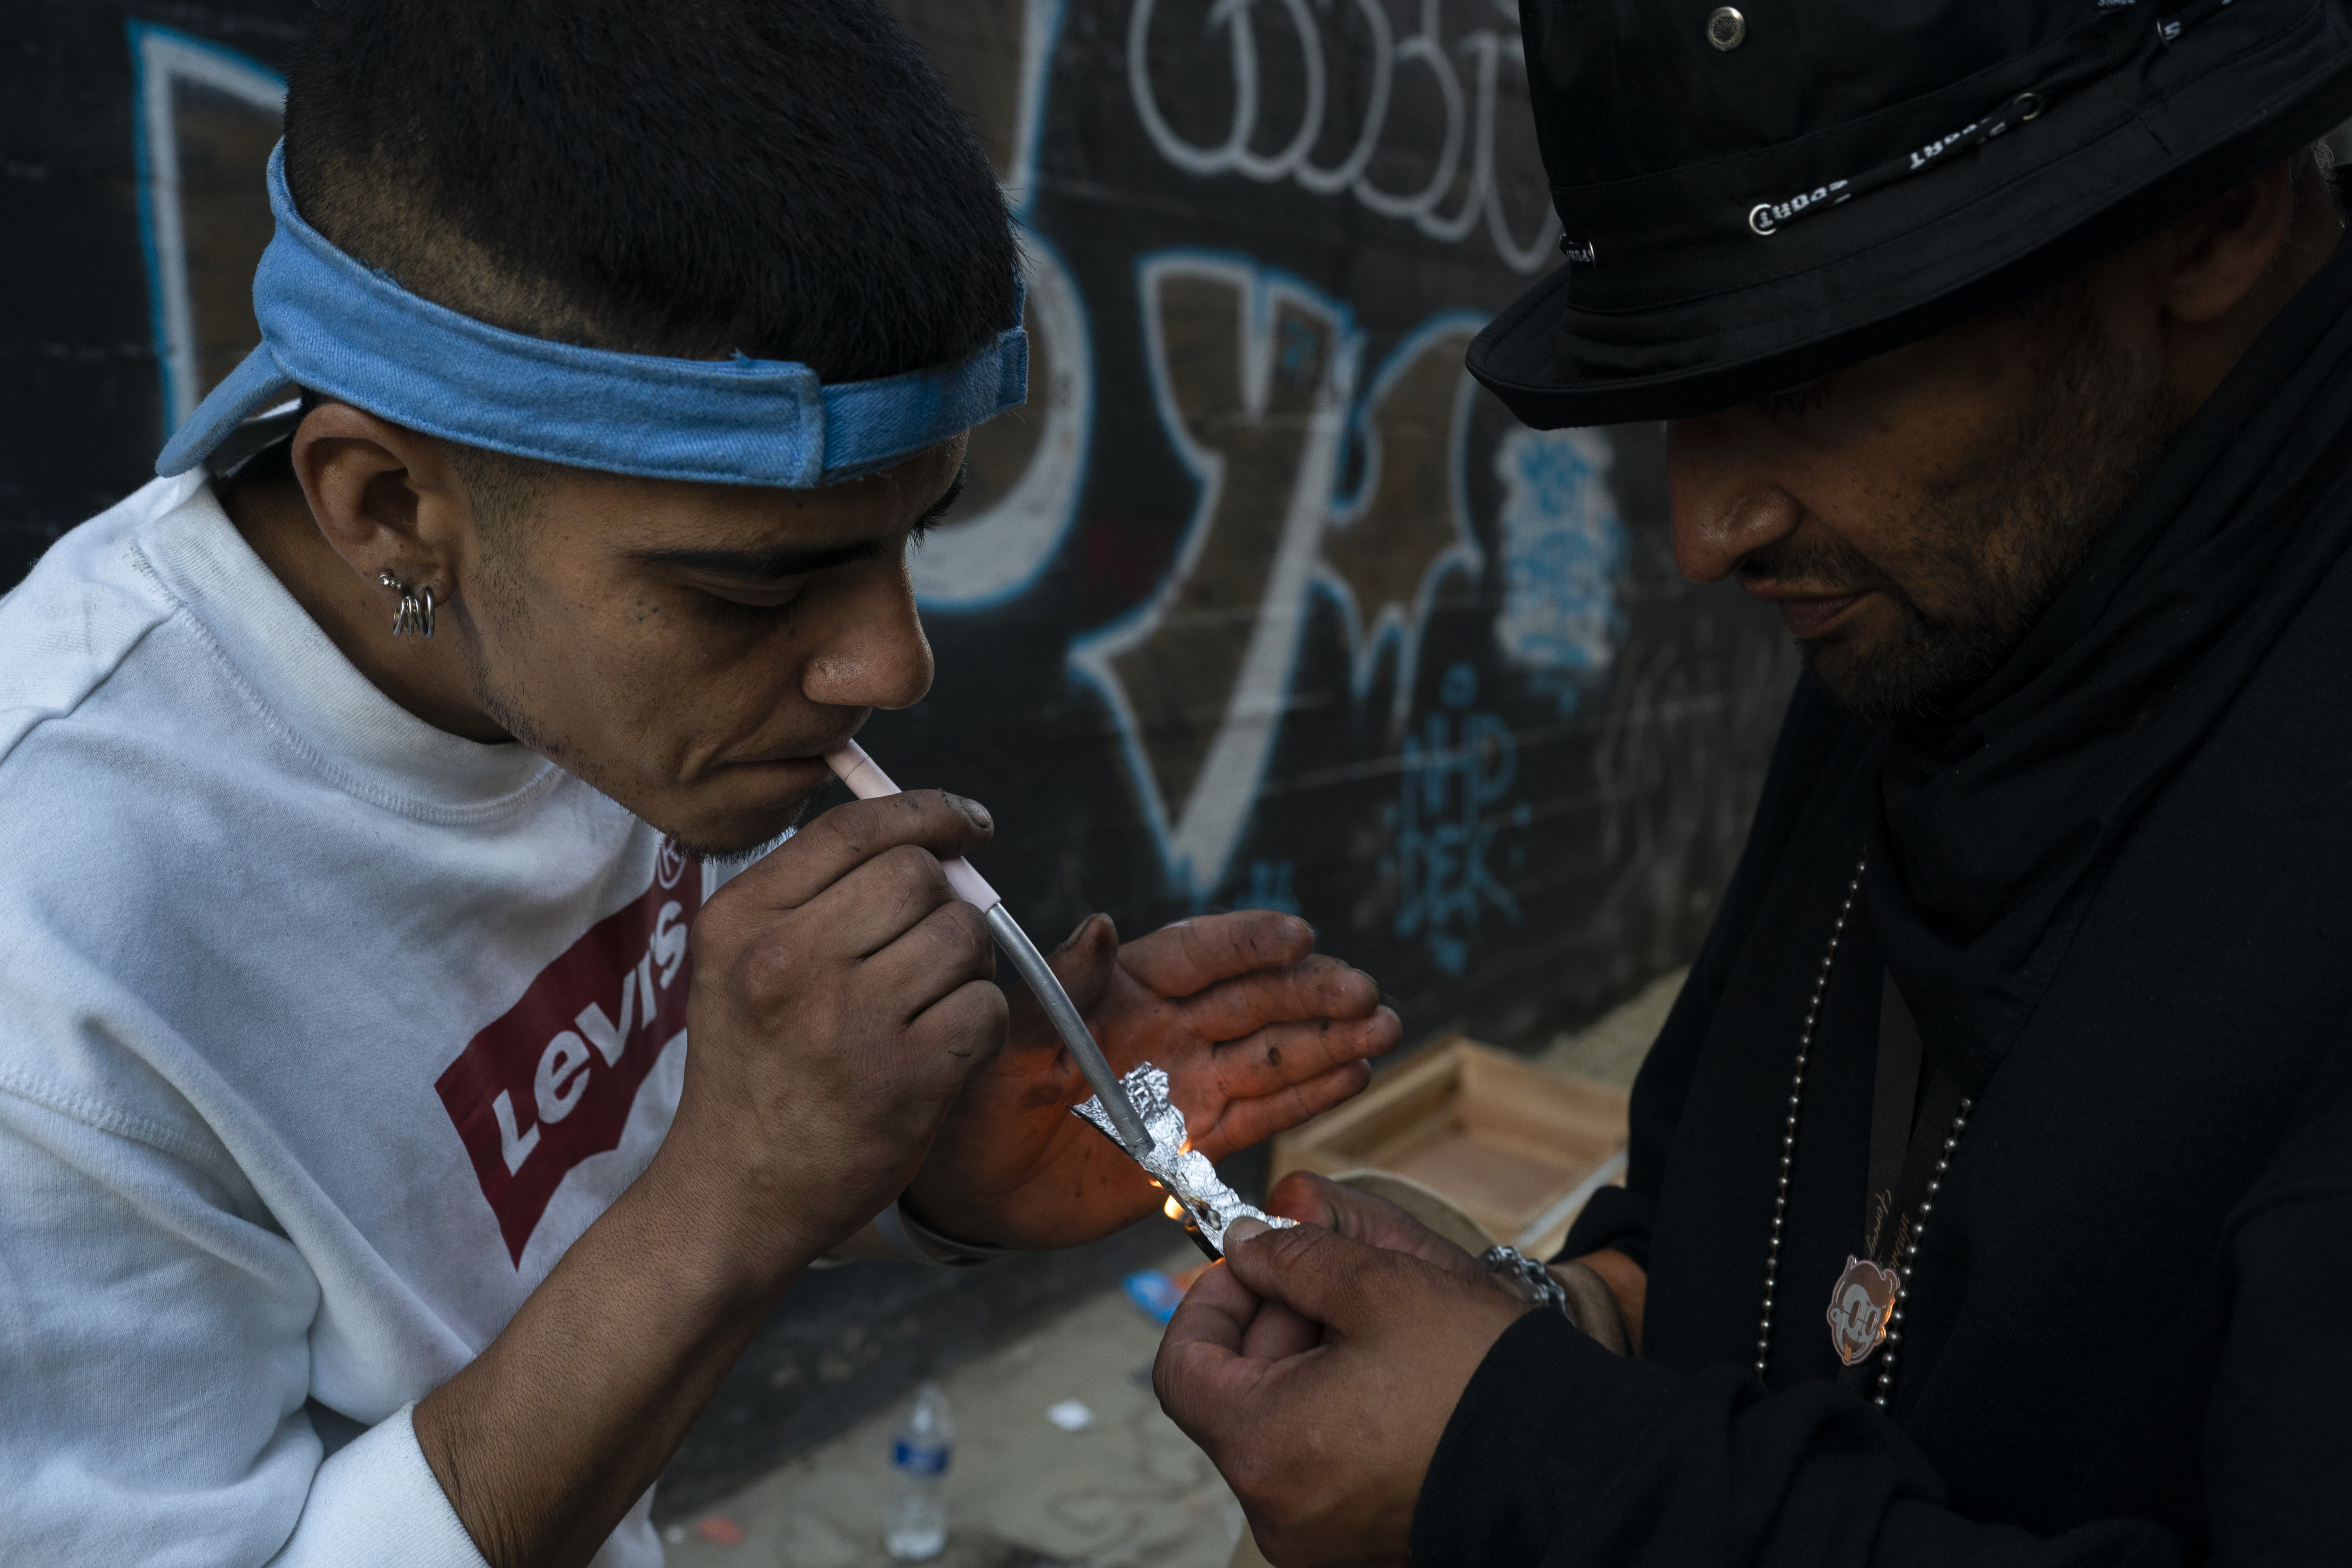 Dos adictos indigentes comparten una pequeña dosis de fentanilo en un callejón de Los Angeles (AP Foto/Jae C. Hong)